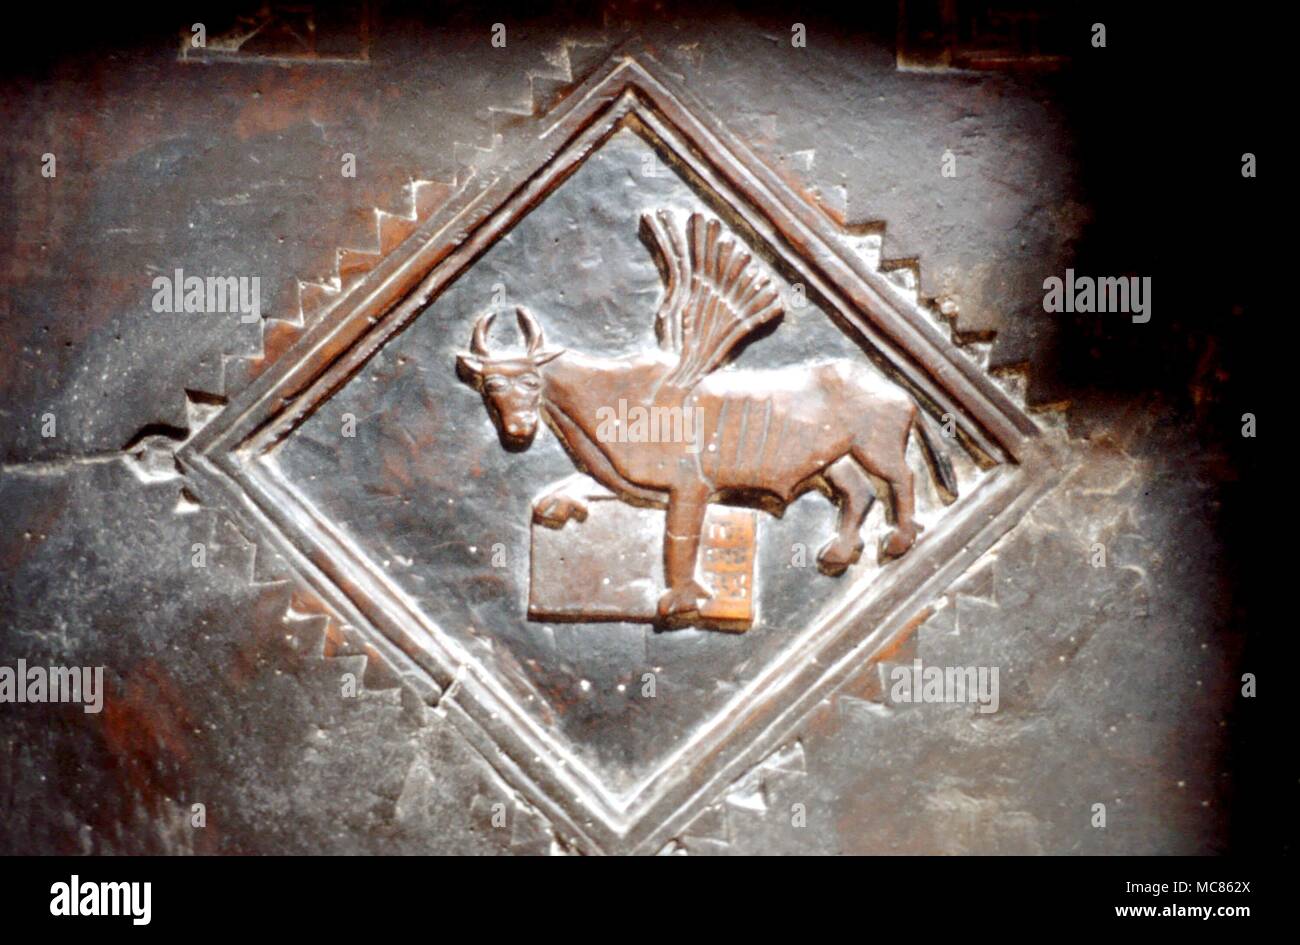 Image chrétienne de saint Luc, sous la forme du taureau du Taureau. Sculpture en bois sur les sièges de la cathédrale de Matera, Italie Banque D'Images